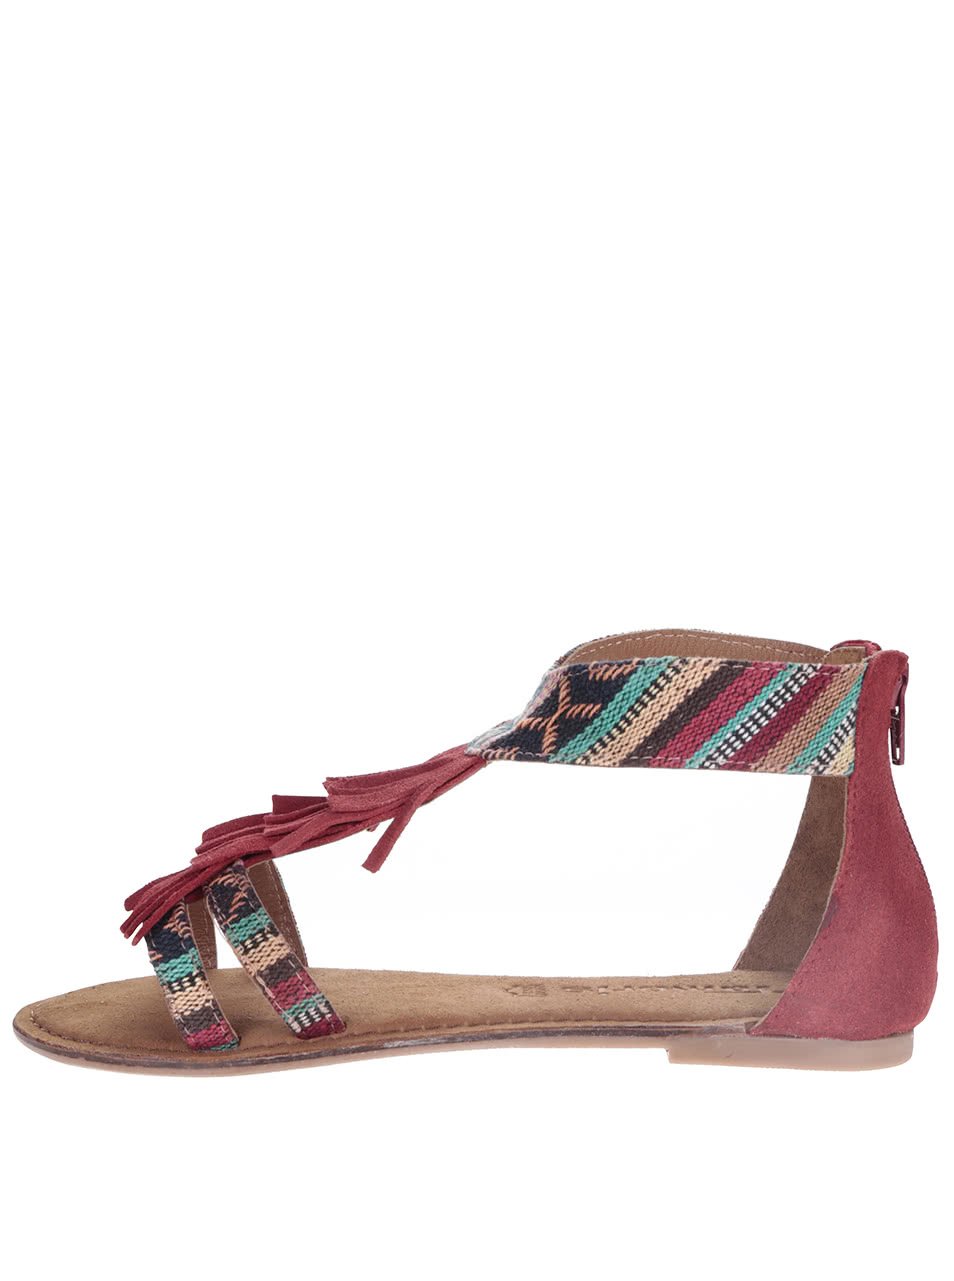 Červené kožené sandály s barevnými vzory Tamaris